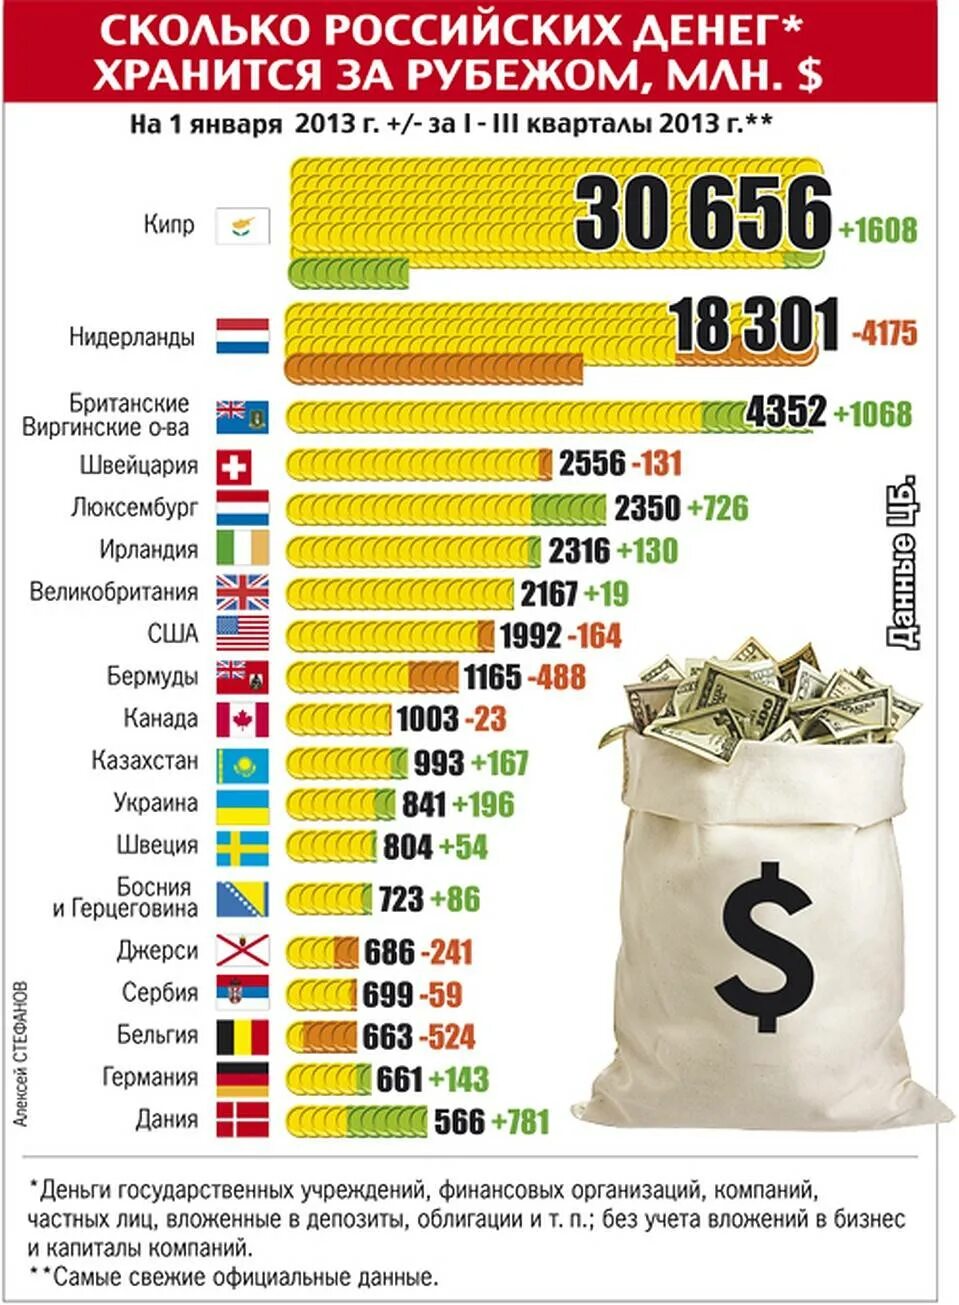 Сколько всего денег в мире у России. Сколько всего денег в мире. Сколькоьденег в России. Количество денег в странах.